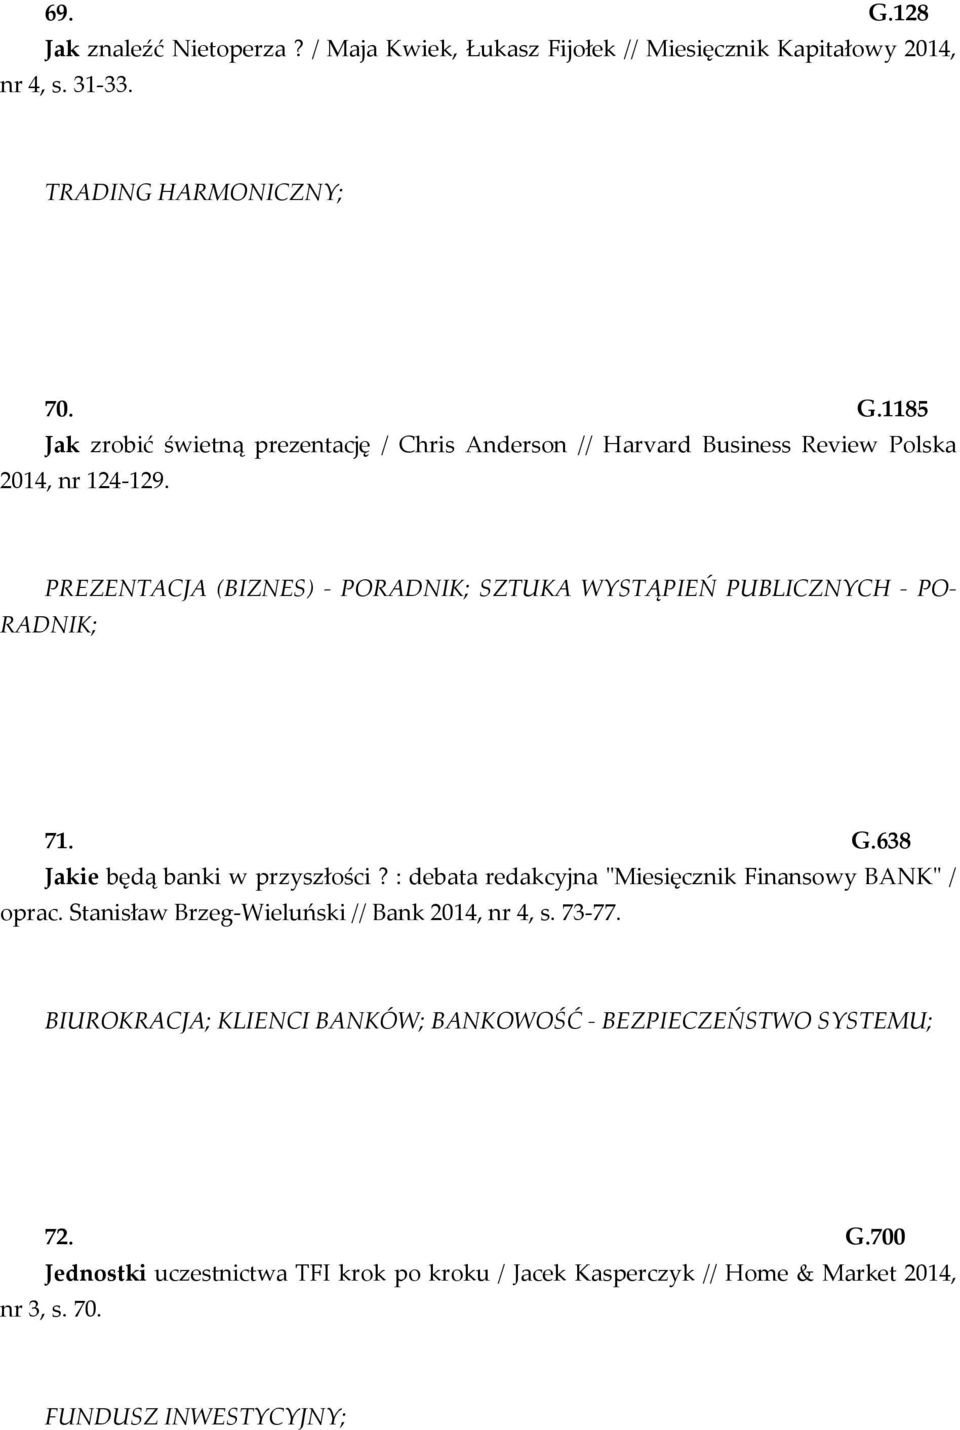 : debata redakcyjna "Miesięcznik Finansowy BANK" / oprac. Stanisław Brzeg-Wieluński // Bank 2014, nr 4, s. 73-77.